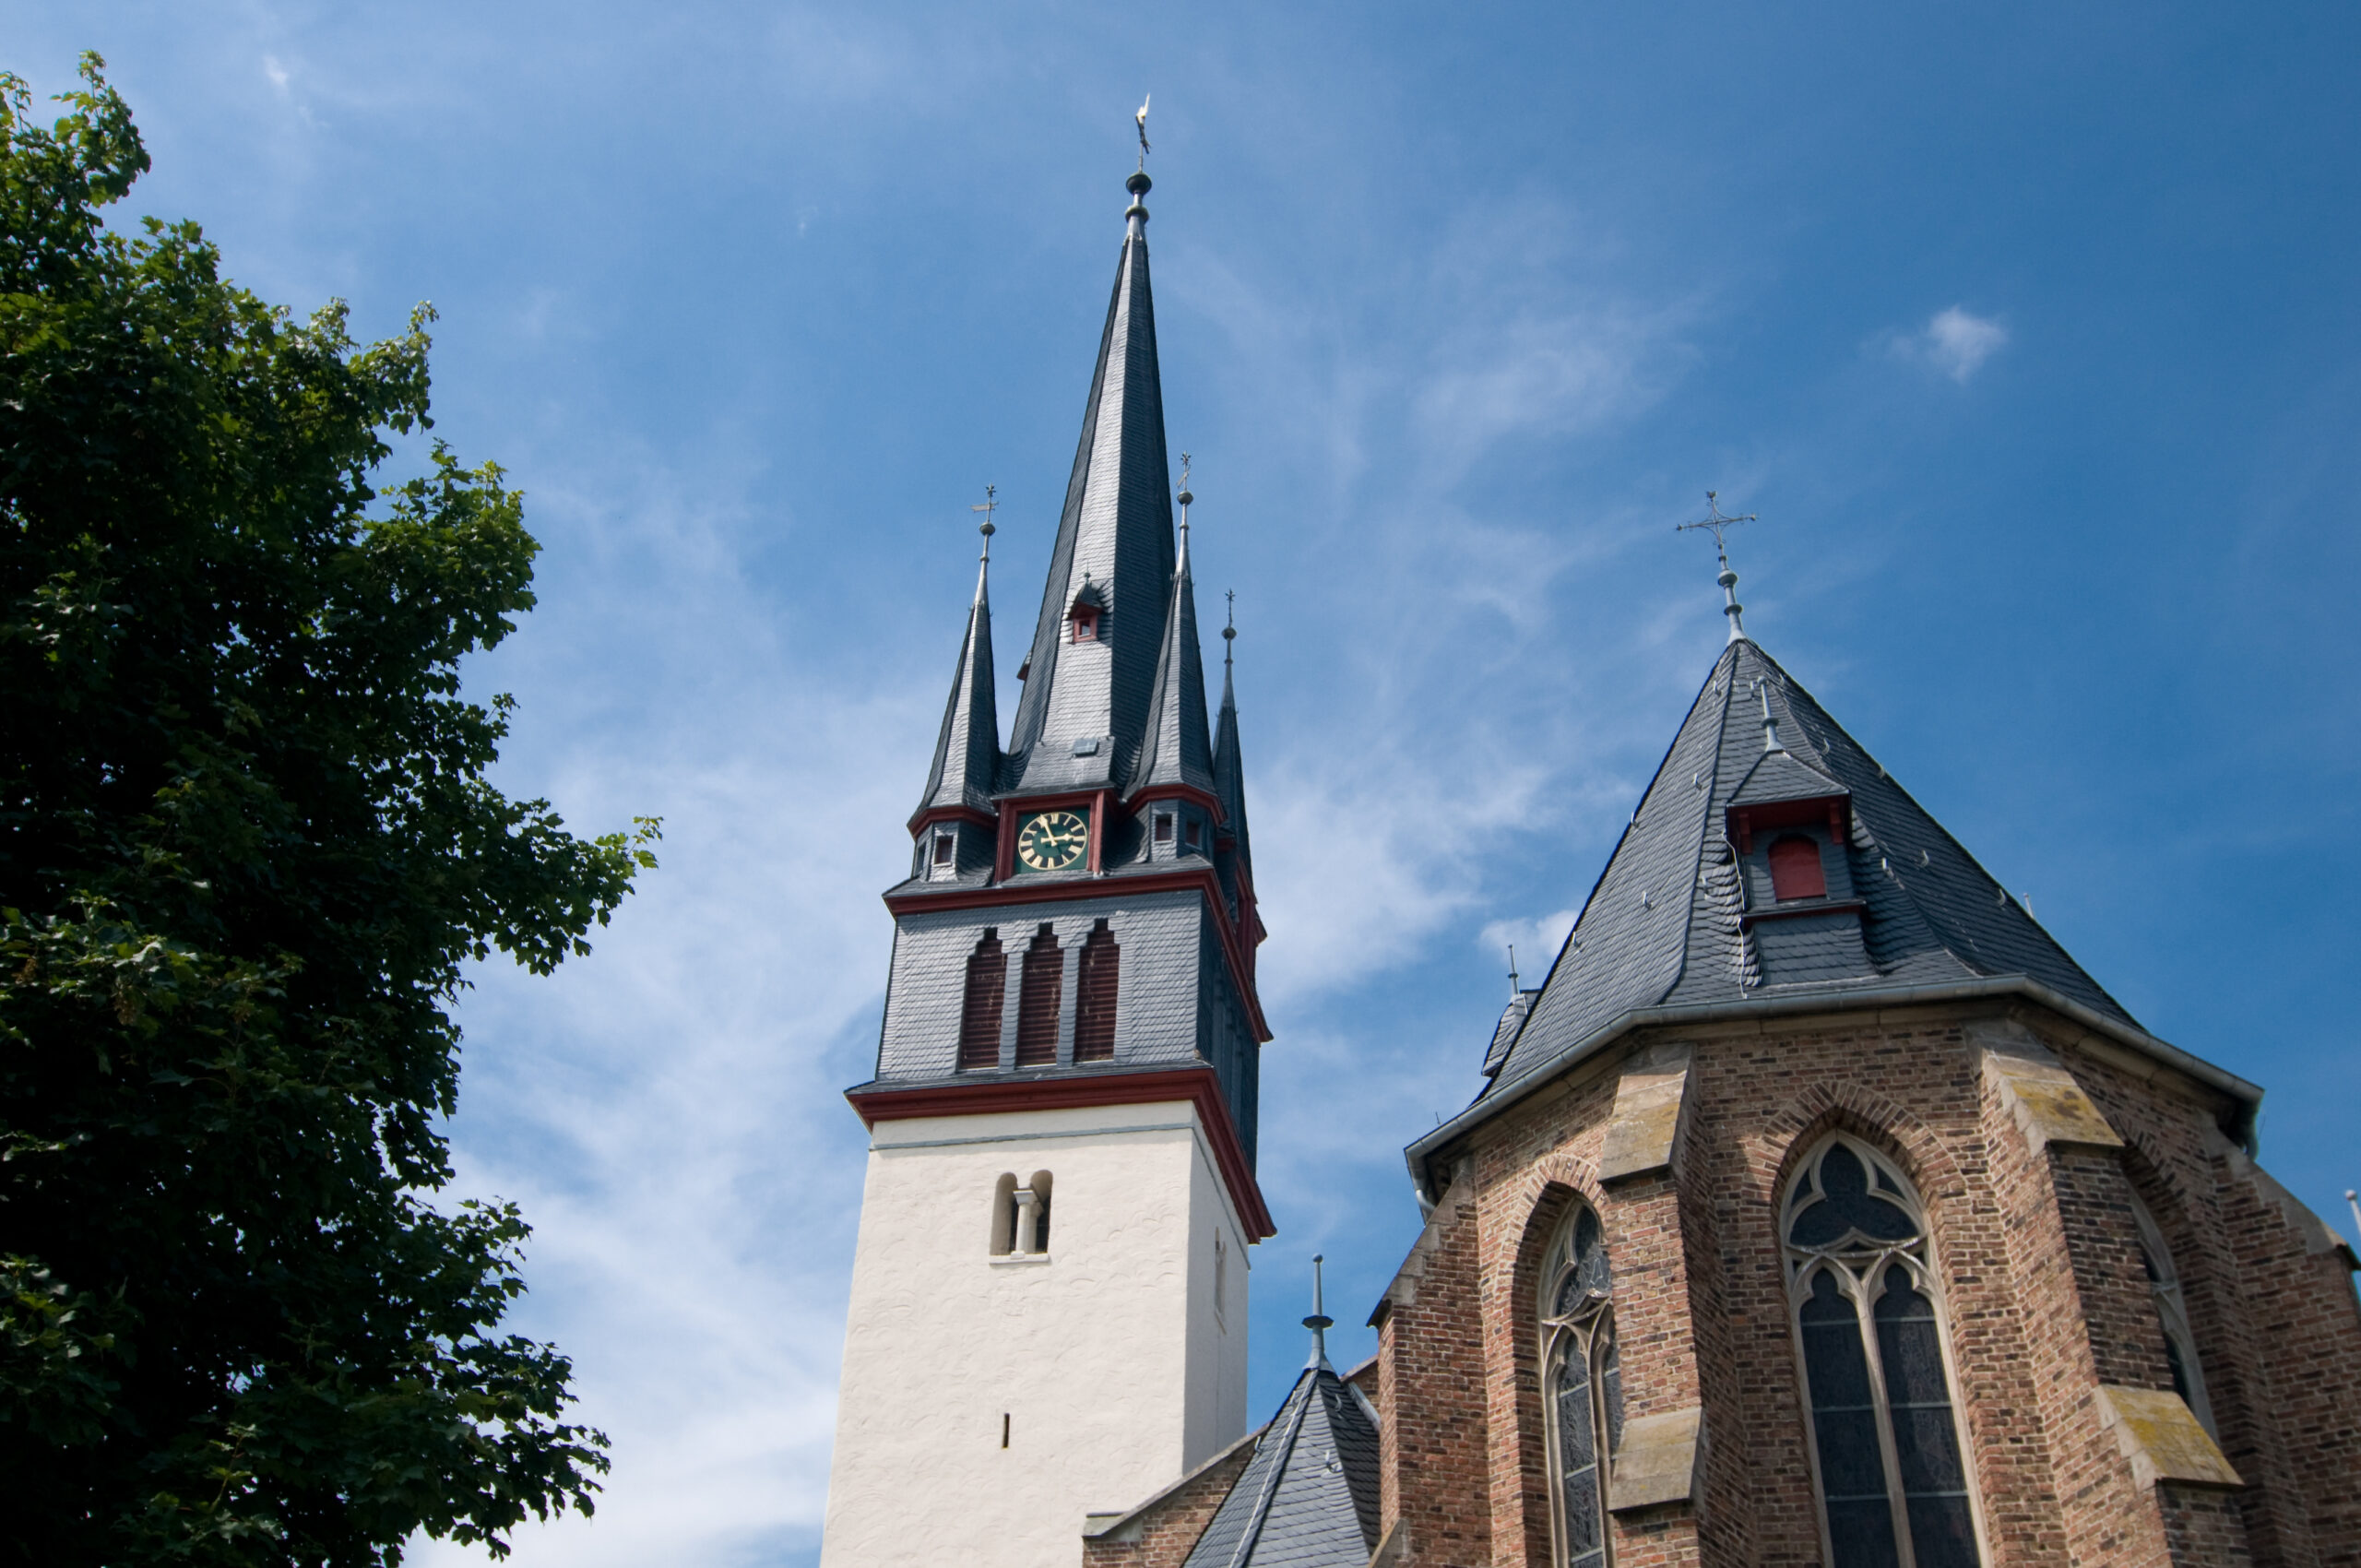 Altdeutsche Deckung Kirchturm 6 scaled